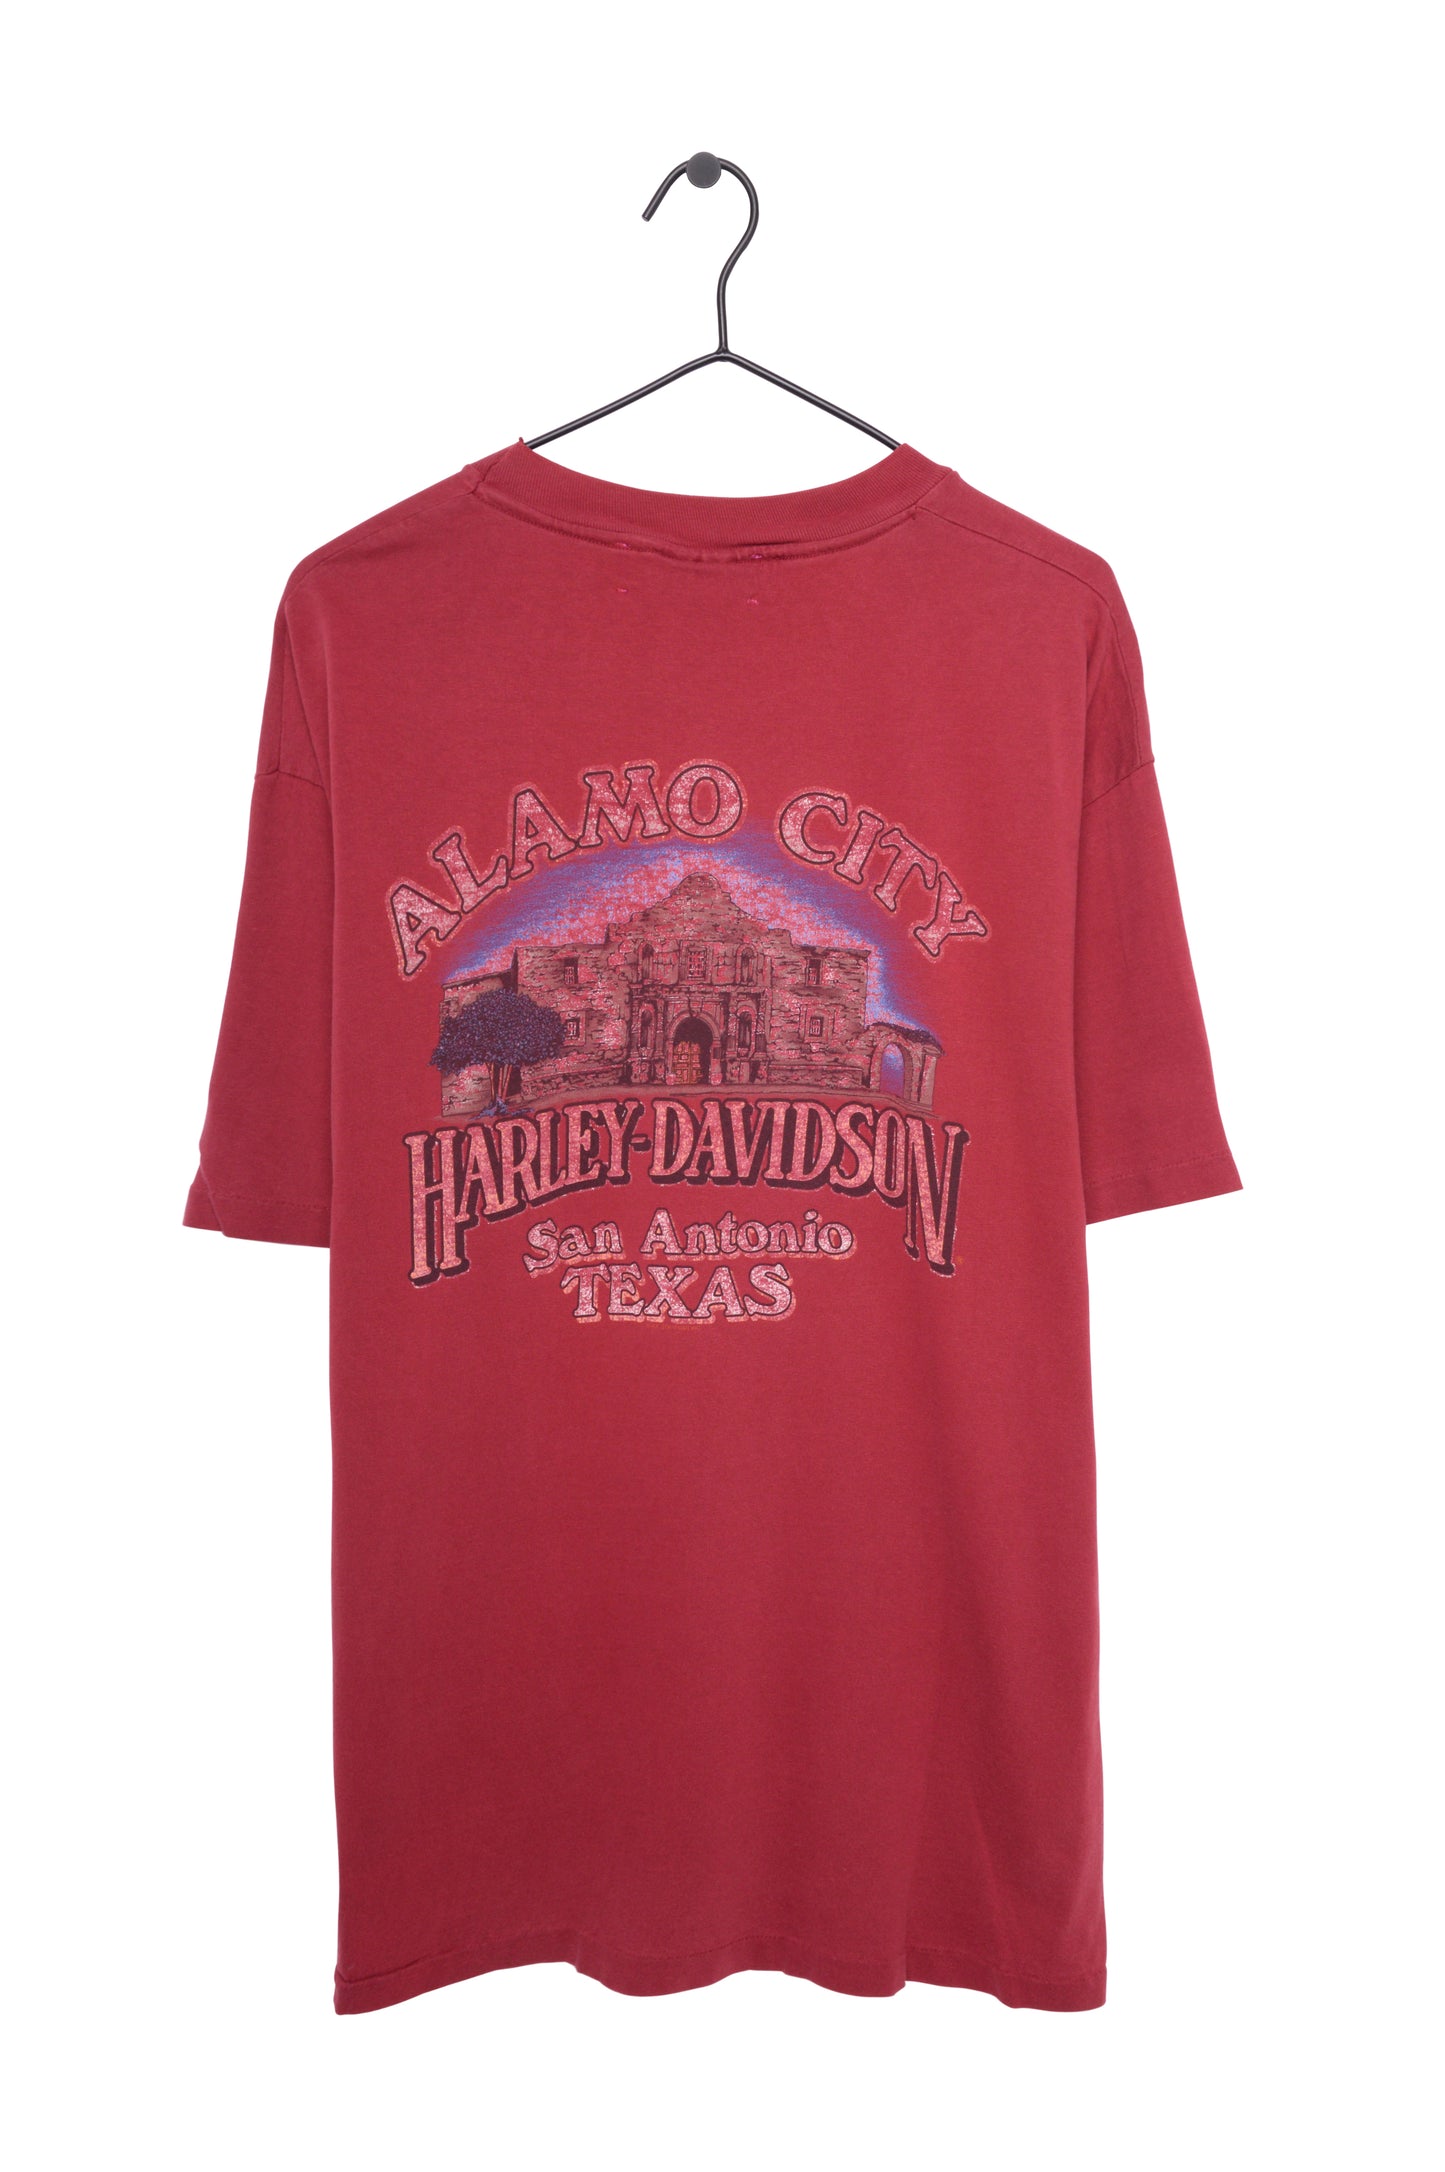 Harley Davidson Texas Tee USA